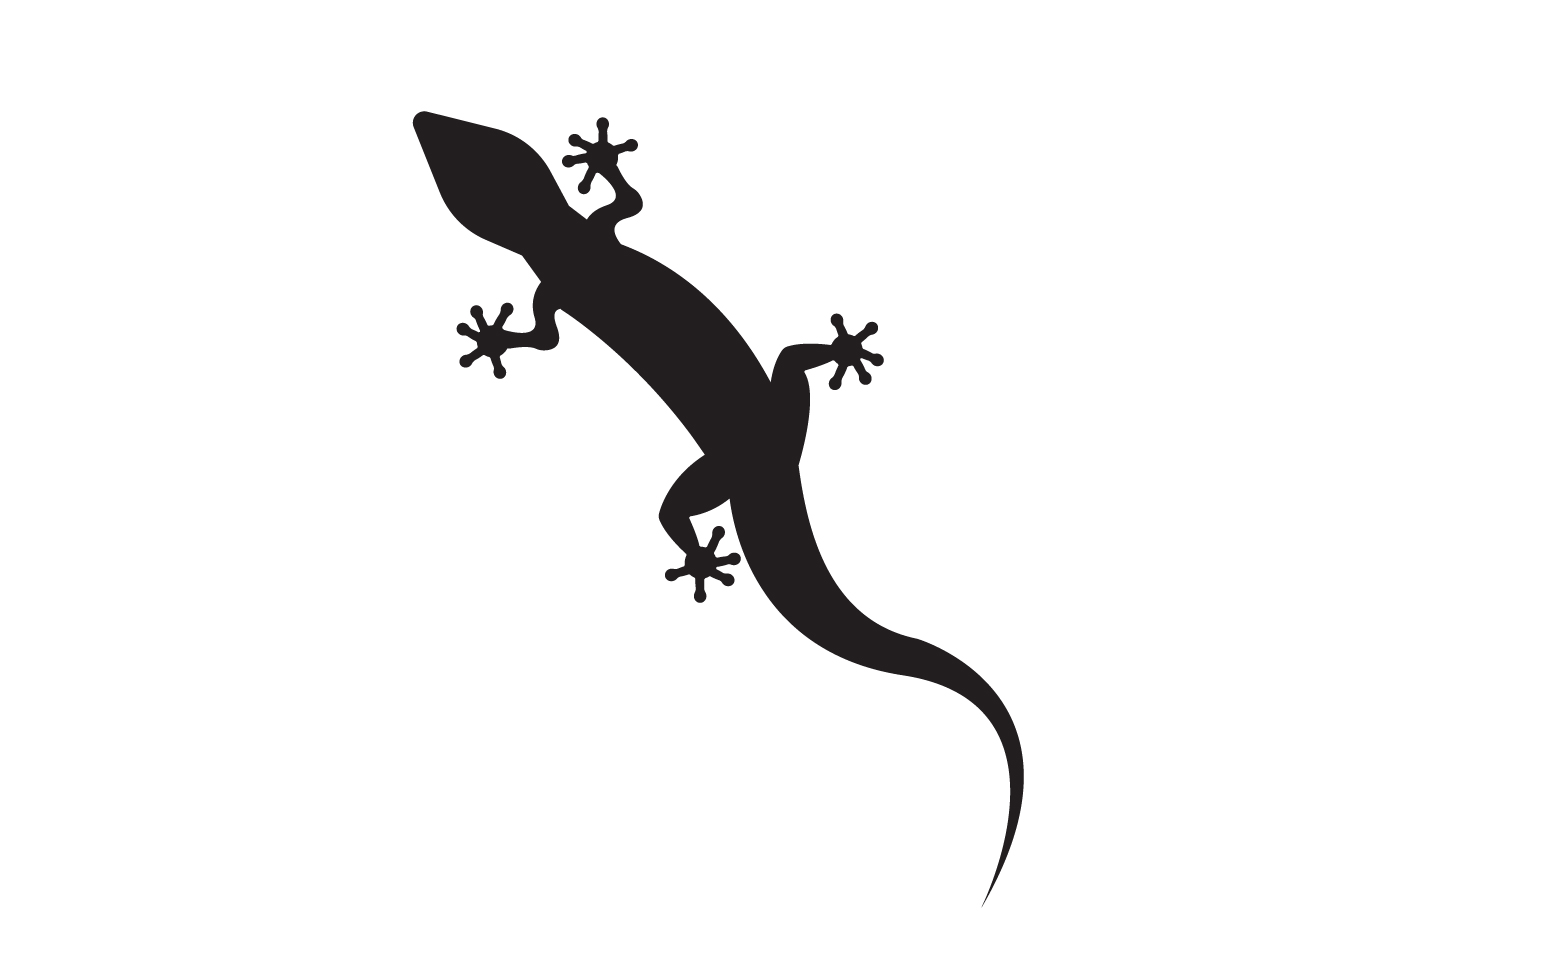 Lizard chameleon home lizard logo v20